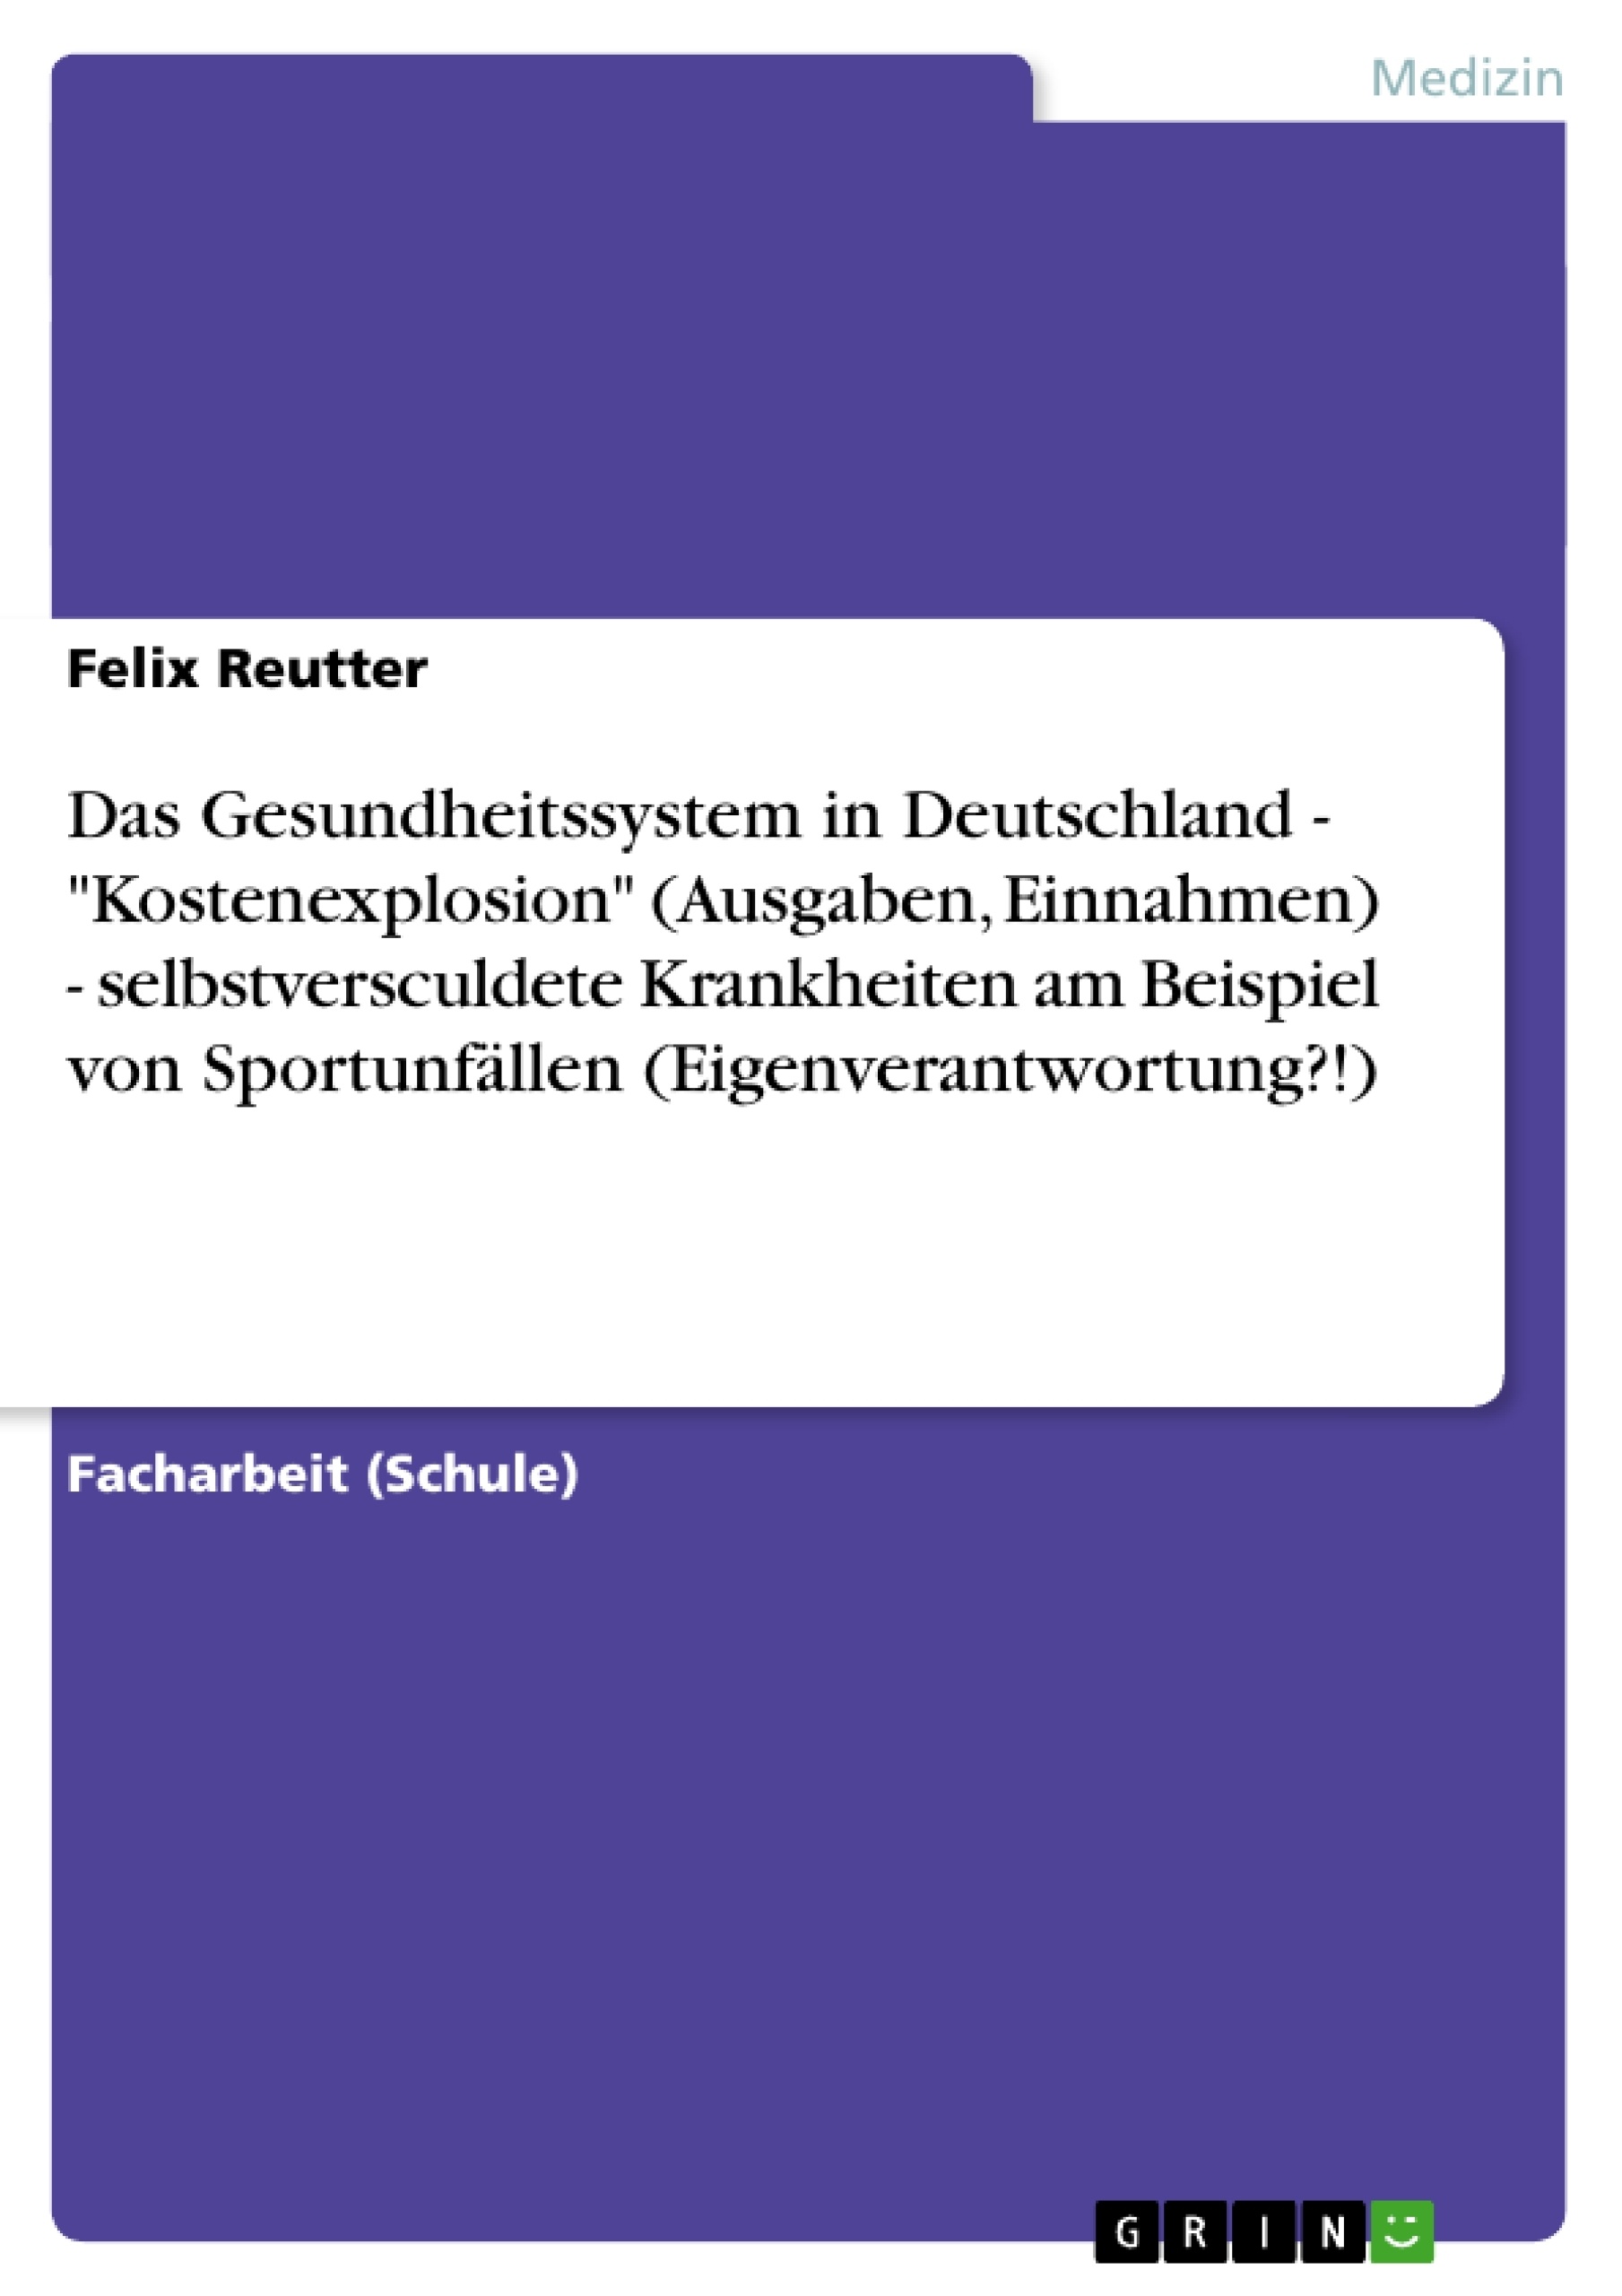 Title: Das Gesundheitssystem in Deutschland - "Kostenexplosion" (Ausgaben, Einnahmen) - selbstversculdete Krankheiten am Beispiel von Sportunfällen (Eigenverantwortung?!)